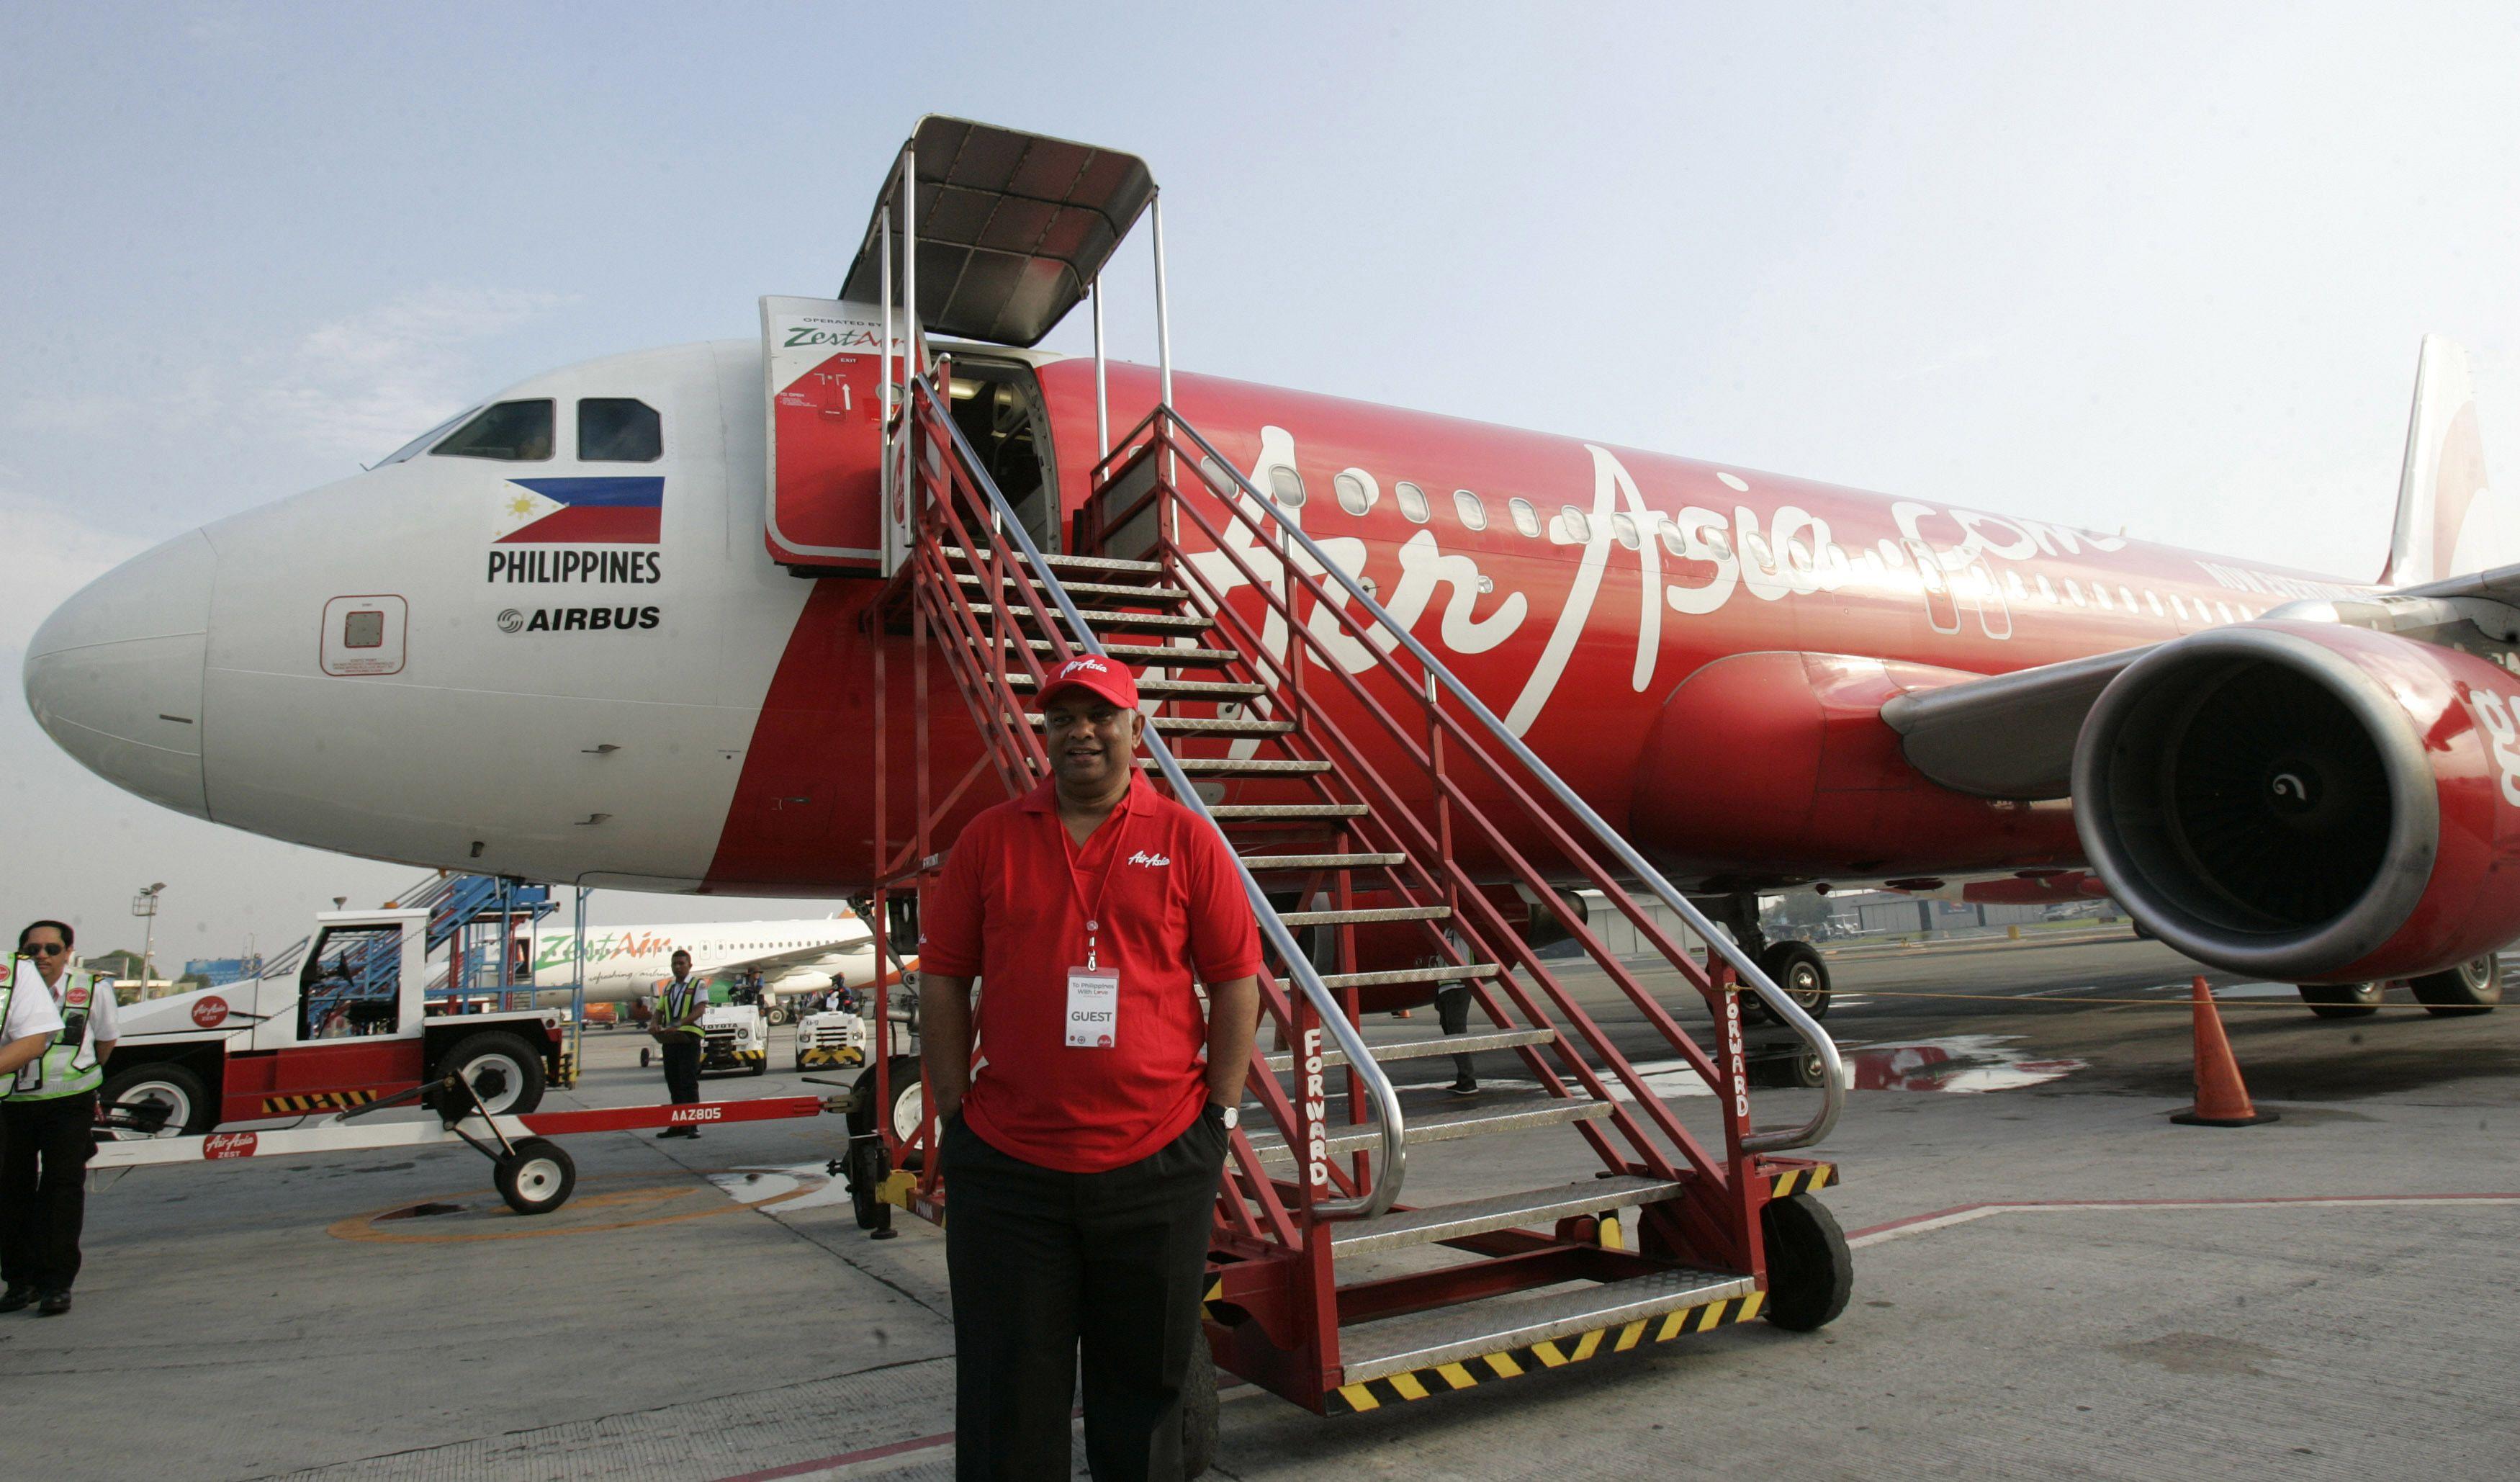 Saham AirAsia Indonesia Meroket 140% Sejak Ganti Nama, Kini Tertekan Aksi Jual